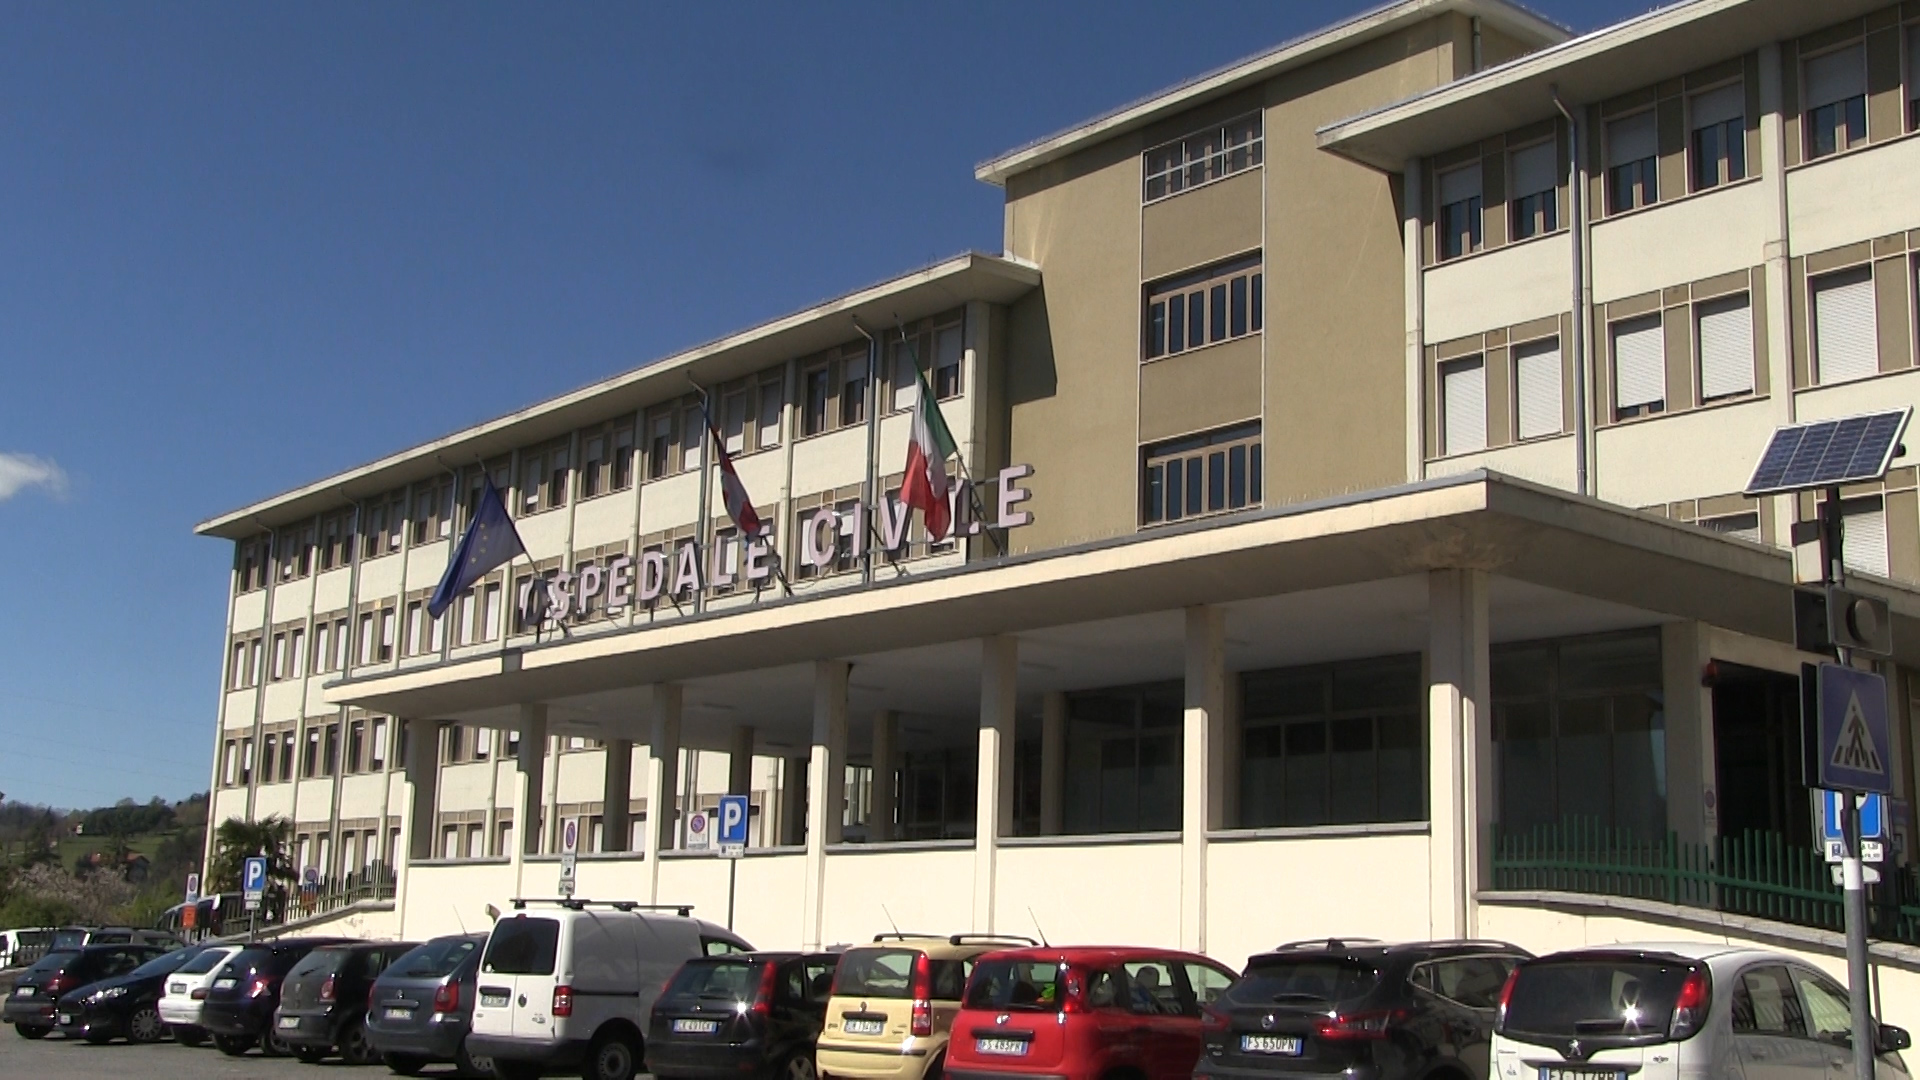 Ospedali di Acqui e Ovada: sindaci soddisfatti dopo l’incontro con l’assessore Icardi